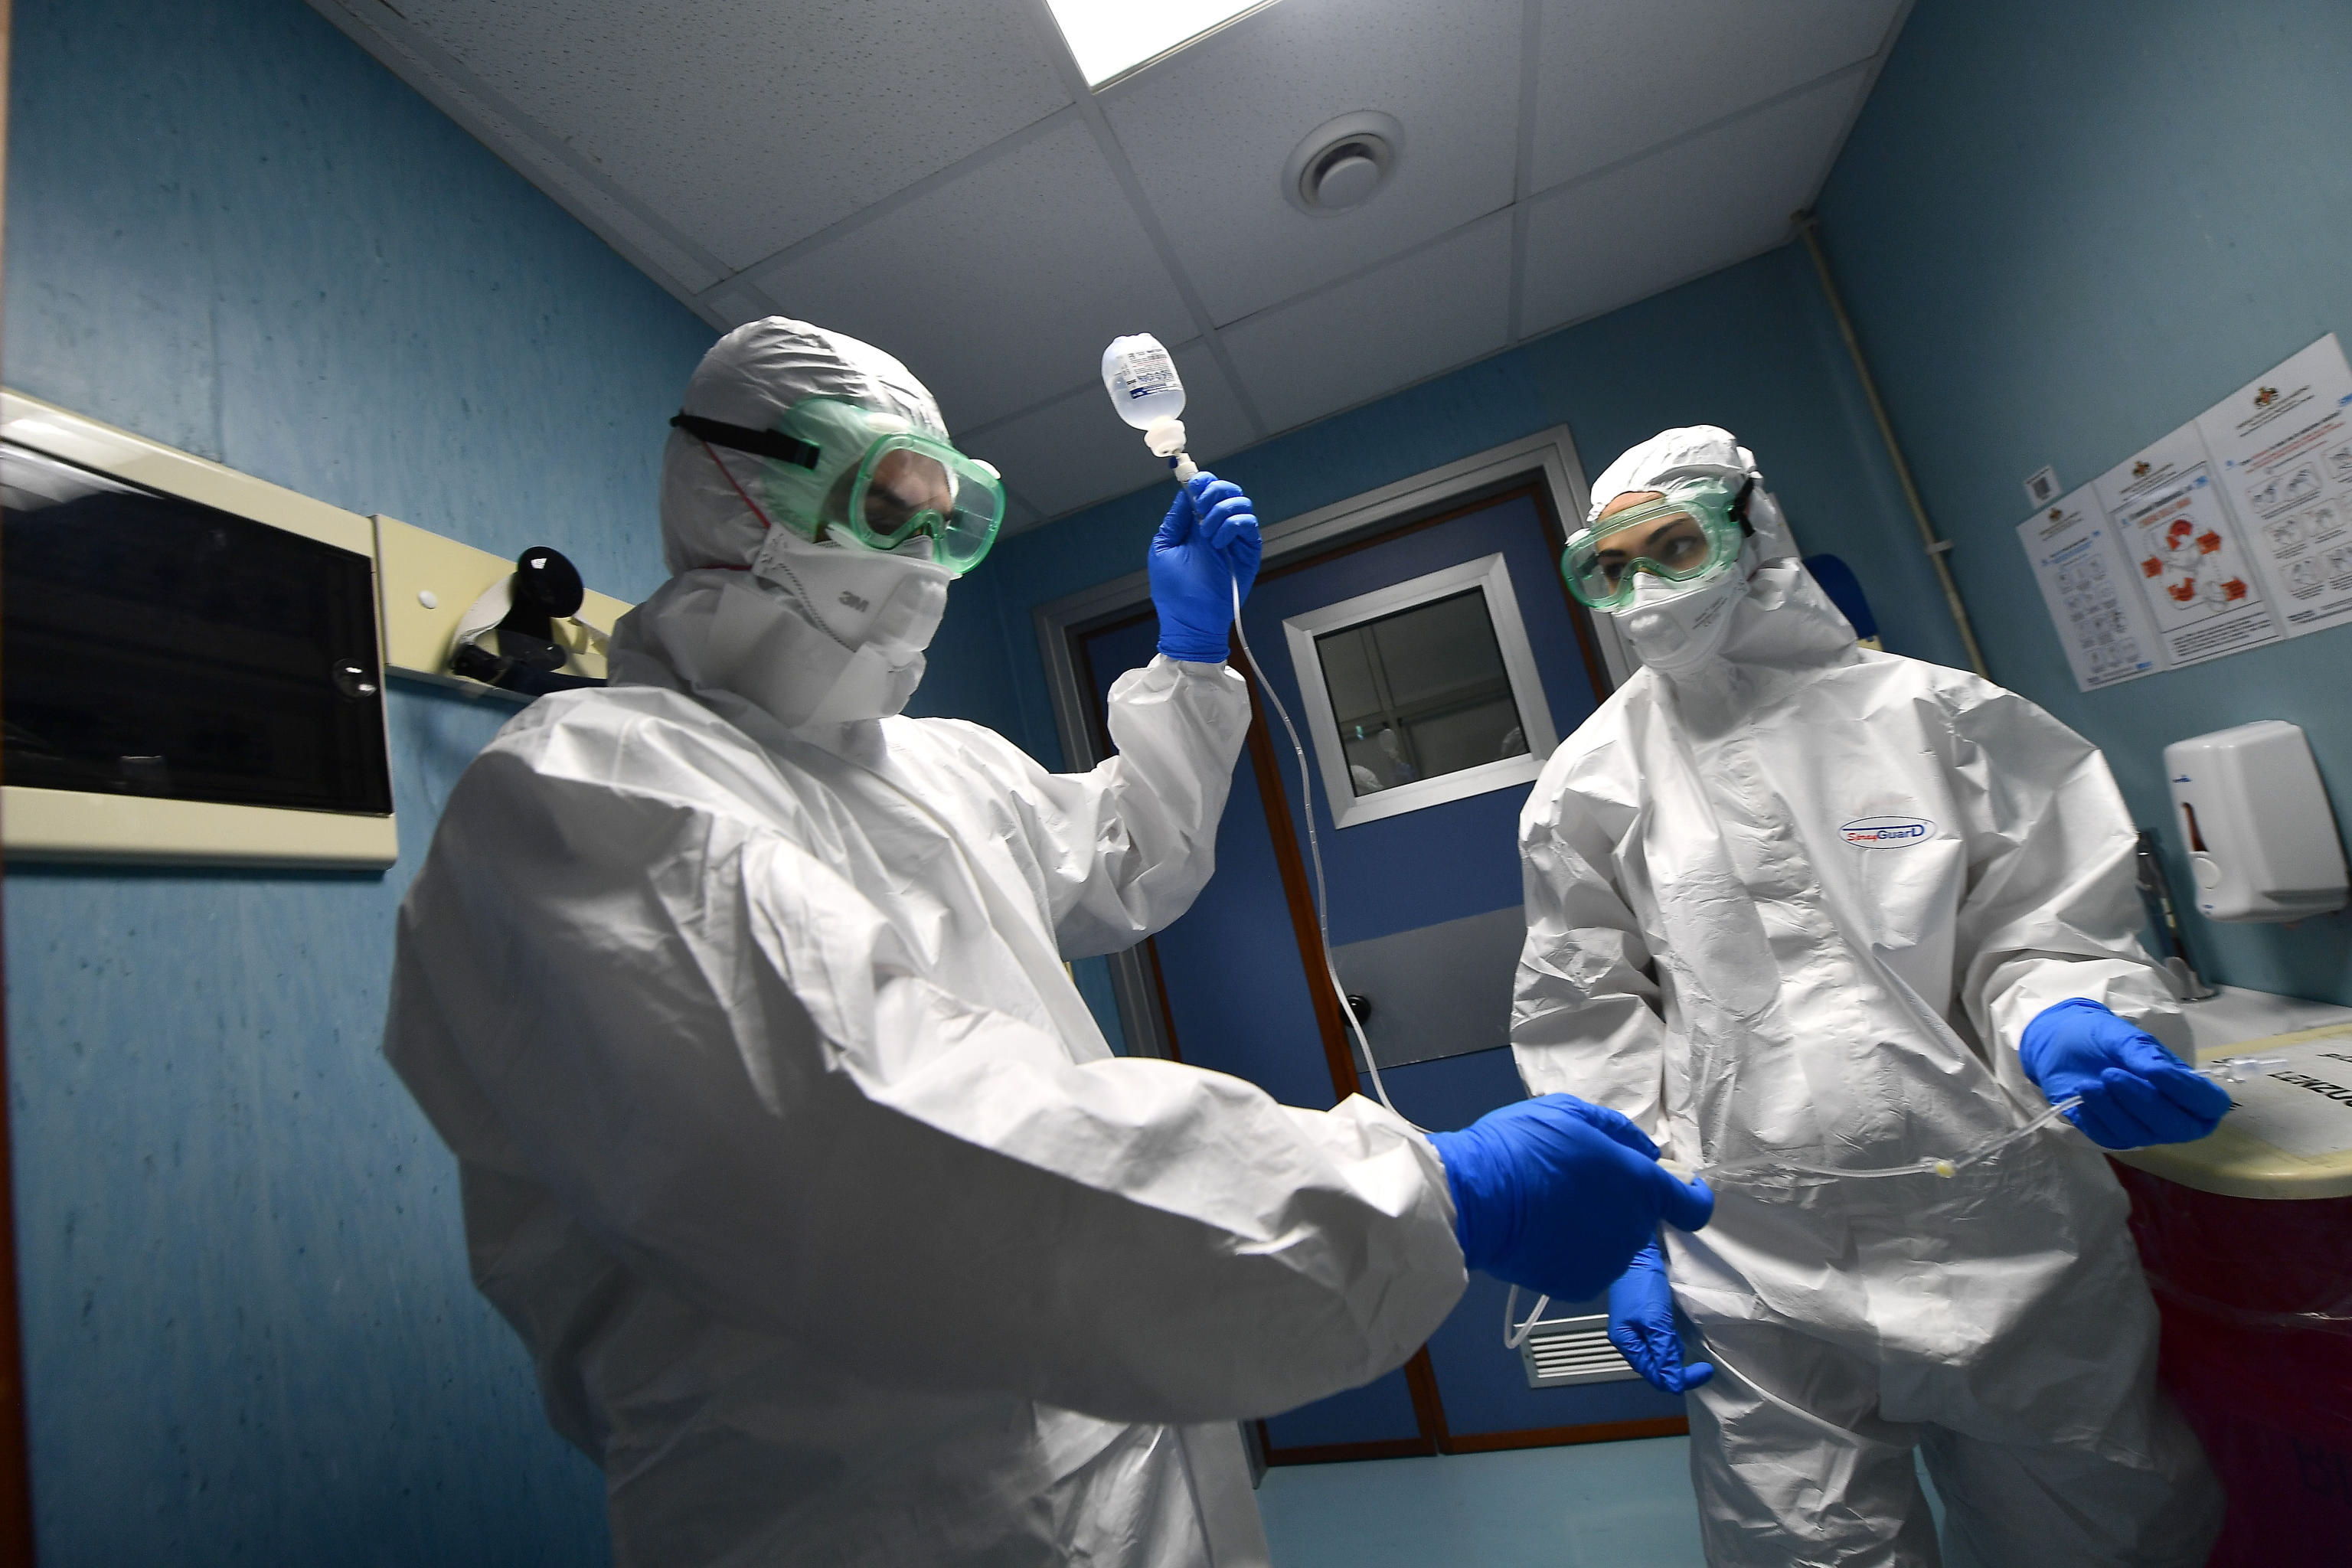 Equipo médico en un hospital de Italia, donde también están en prevención ante el Coronavirus. (Foto Prensa Libre: EFE)